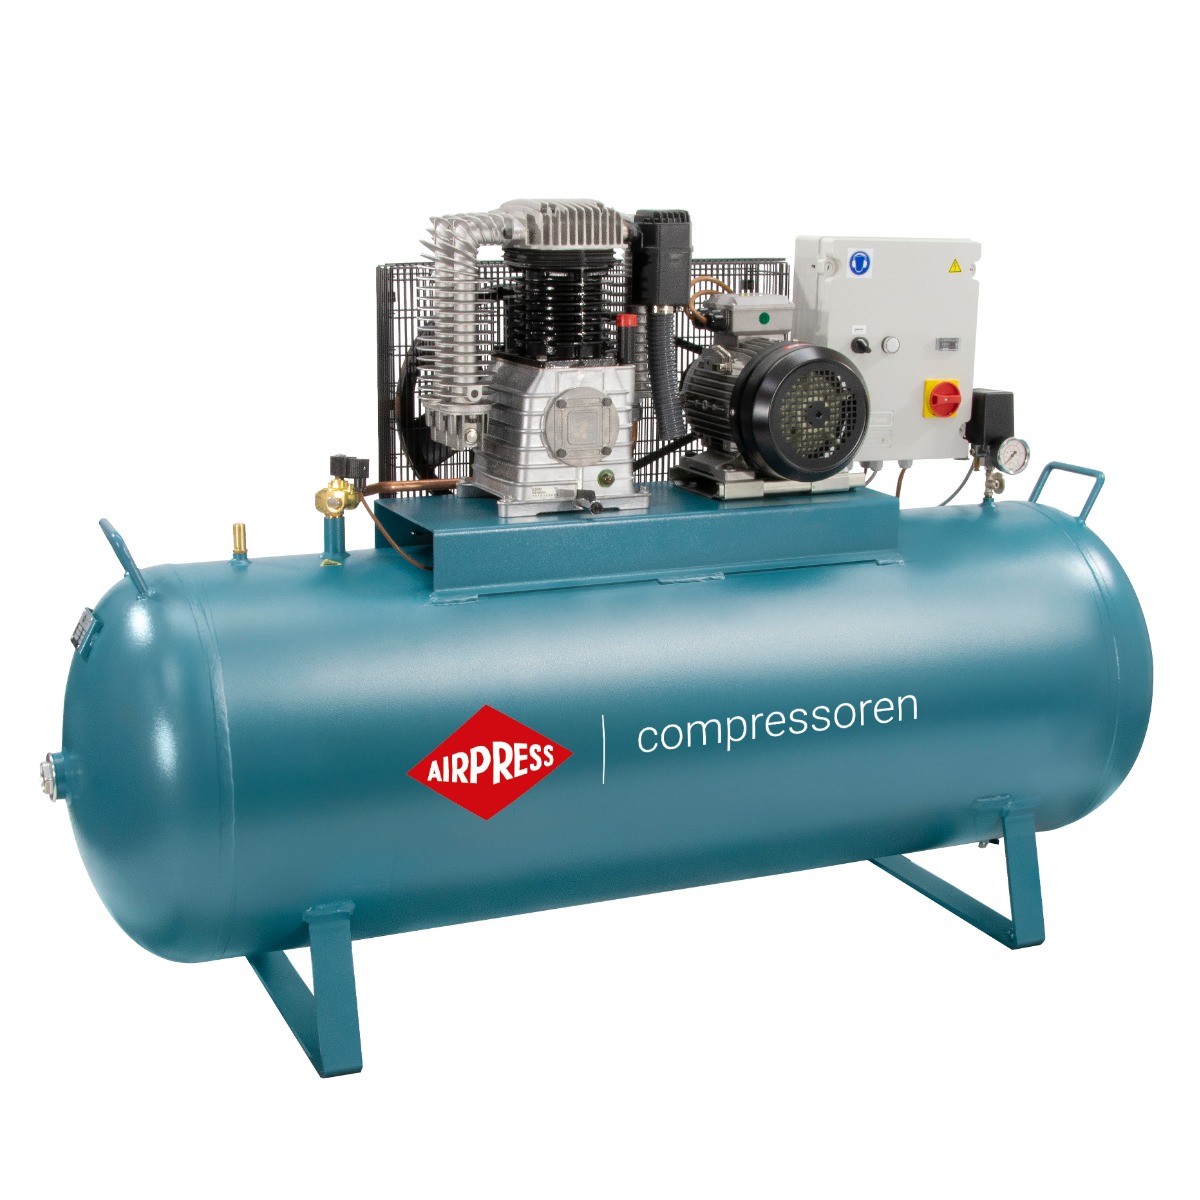 Компрессор 1000 л мин. Compressor - 500 ltkompresor - 500 litre компрессор. Компрессор промышленный 1000 литров. Компрессор вектор 600.